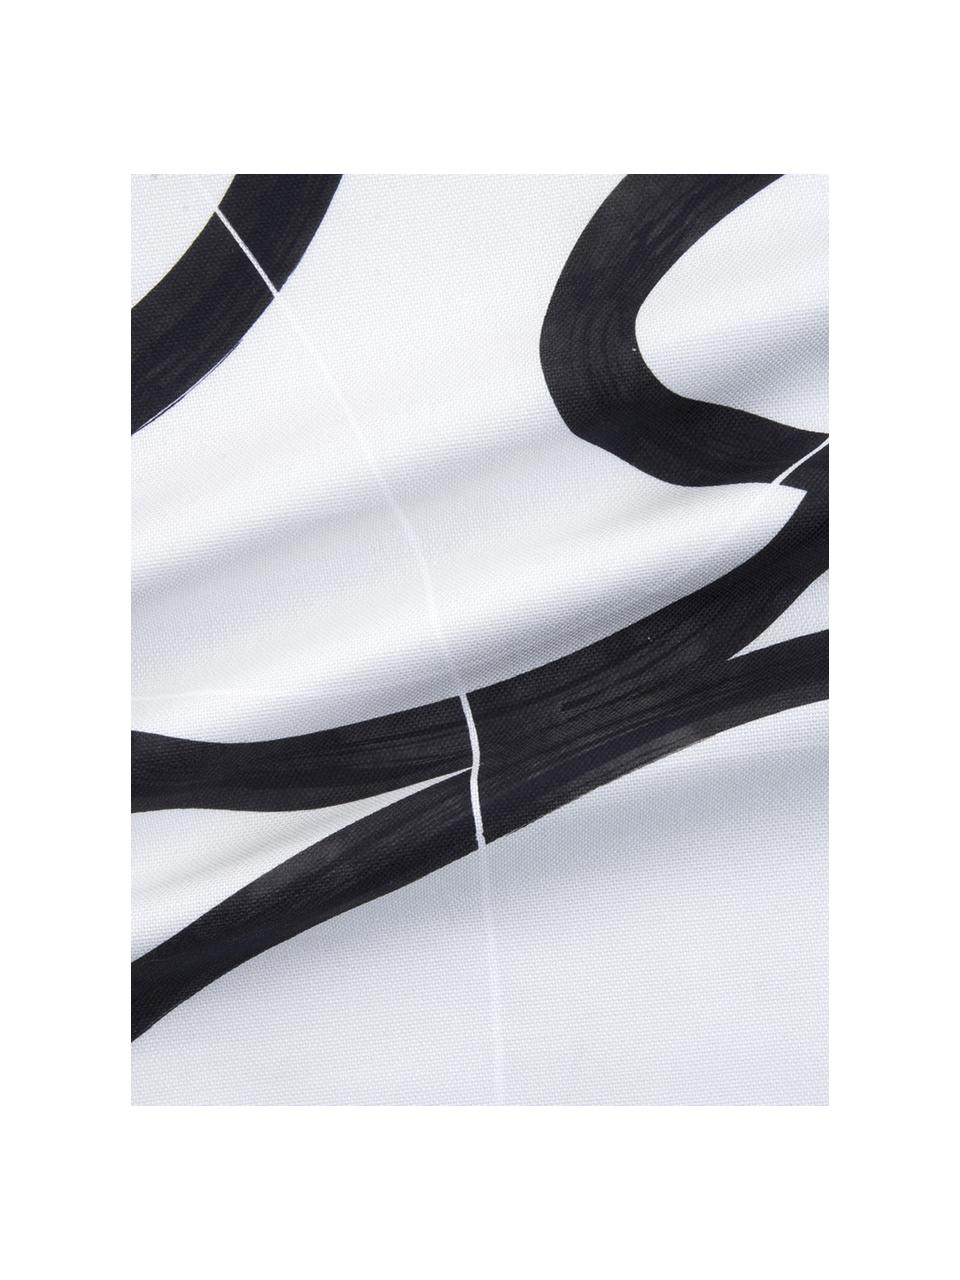 Kissenhülle Elijah mit abstraktem Print, 100% Baumwolle, Beige, Schwarz, Weiss, 40 x 40 cm